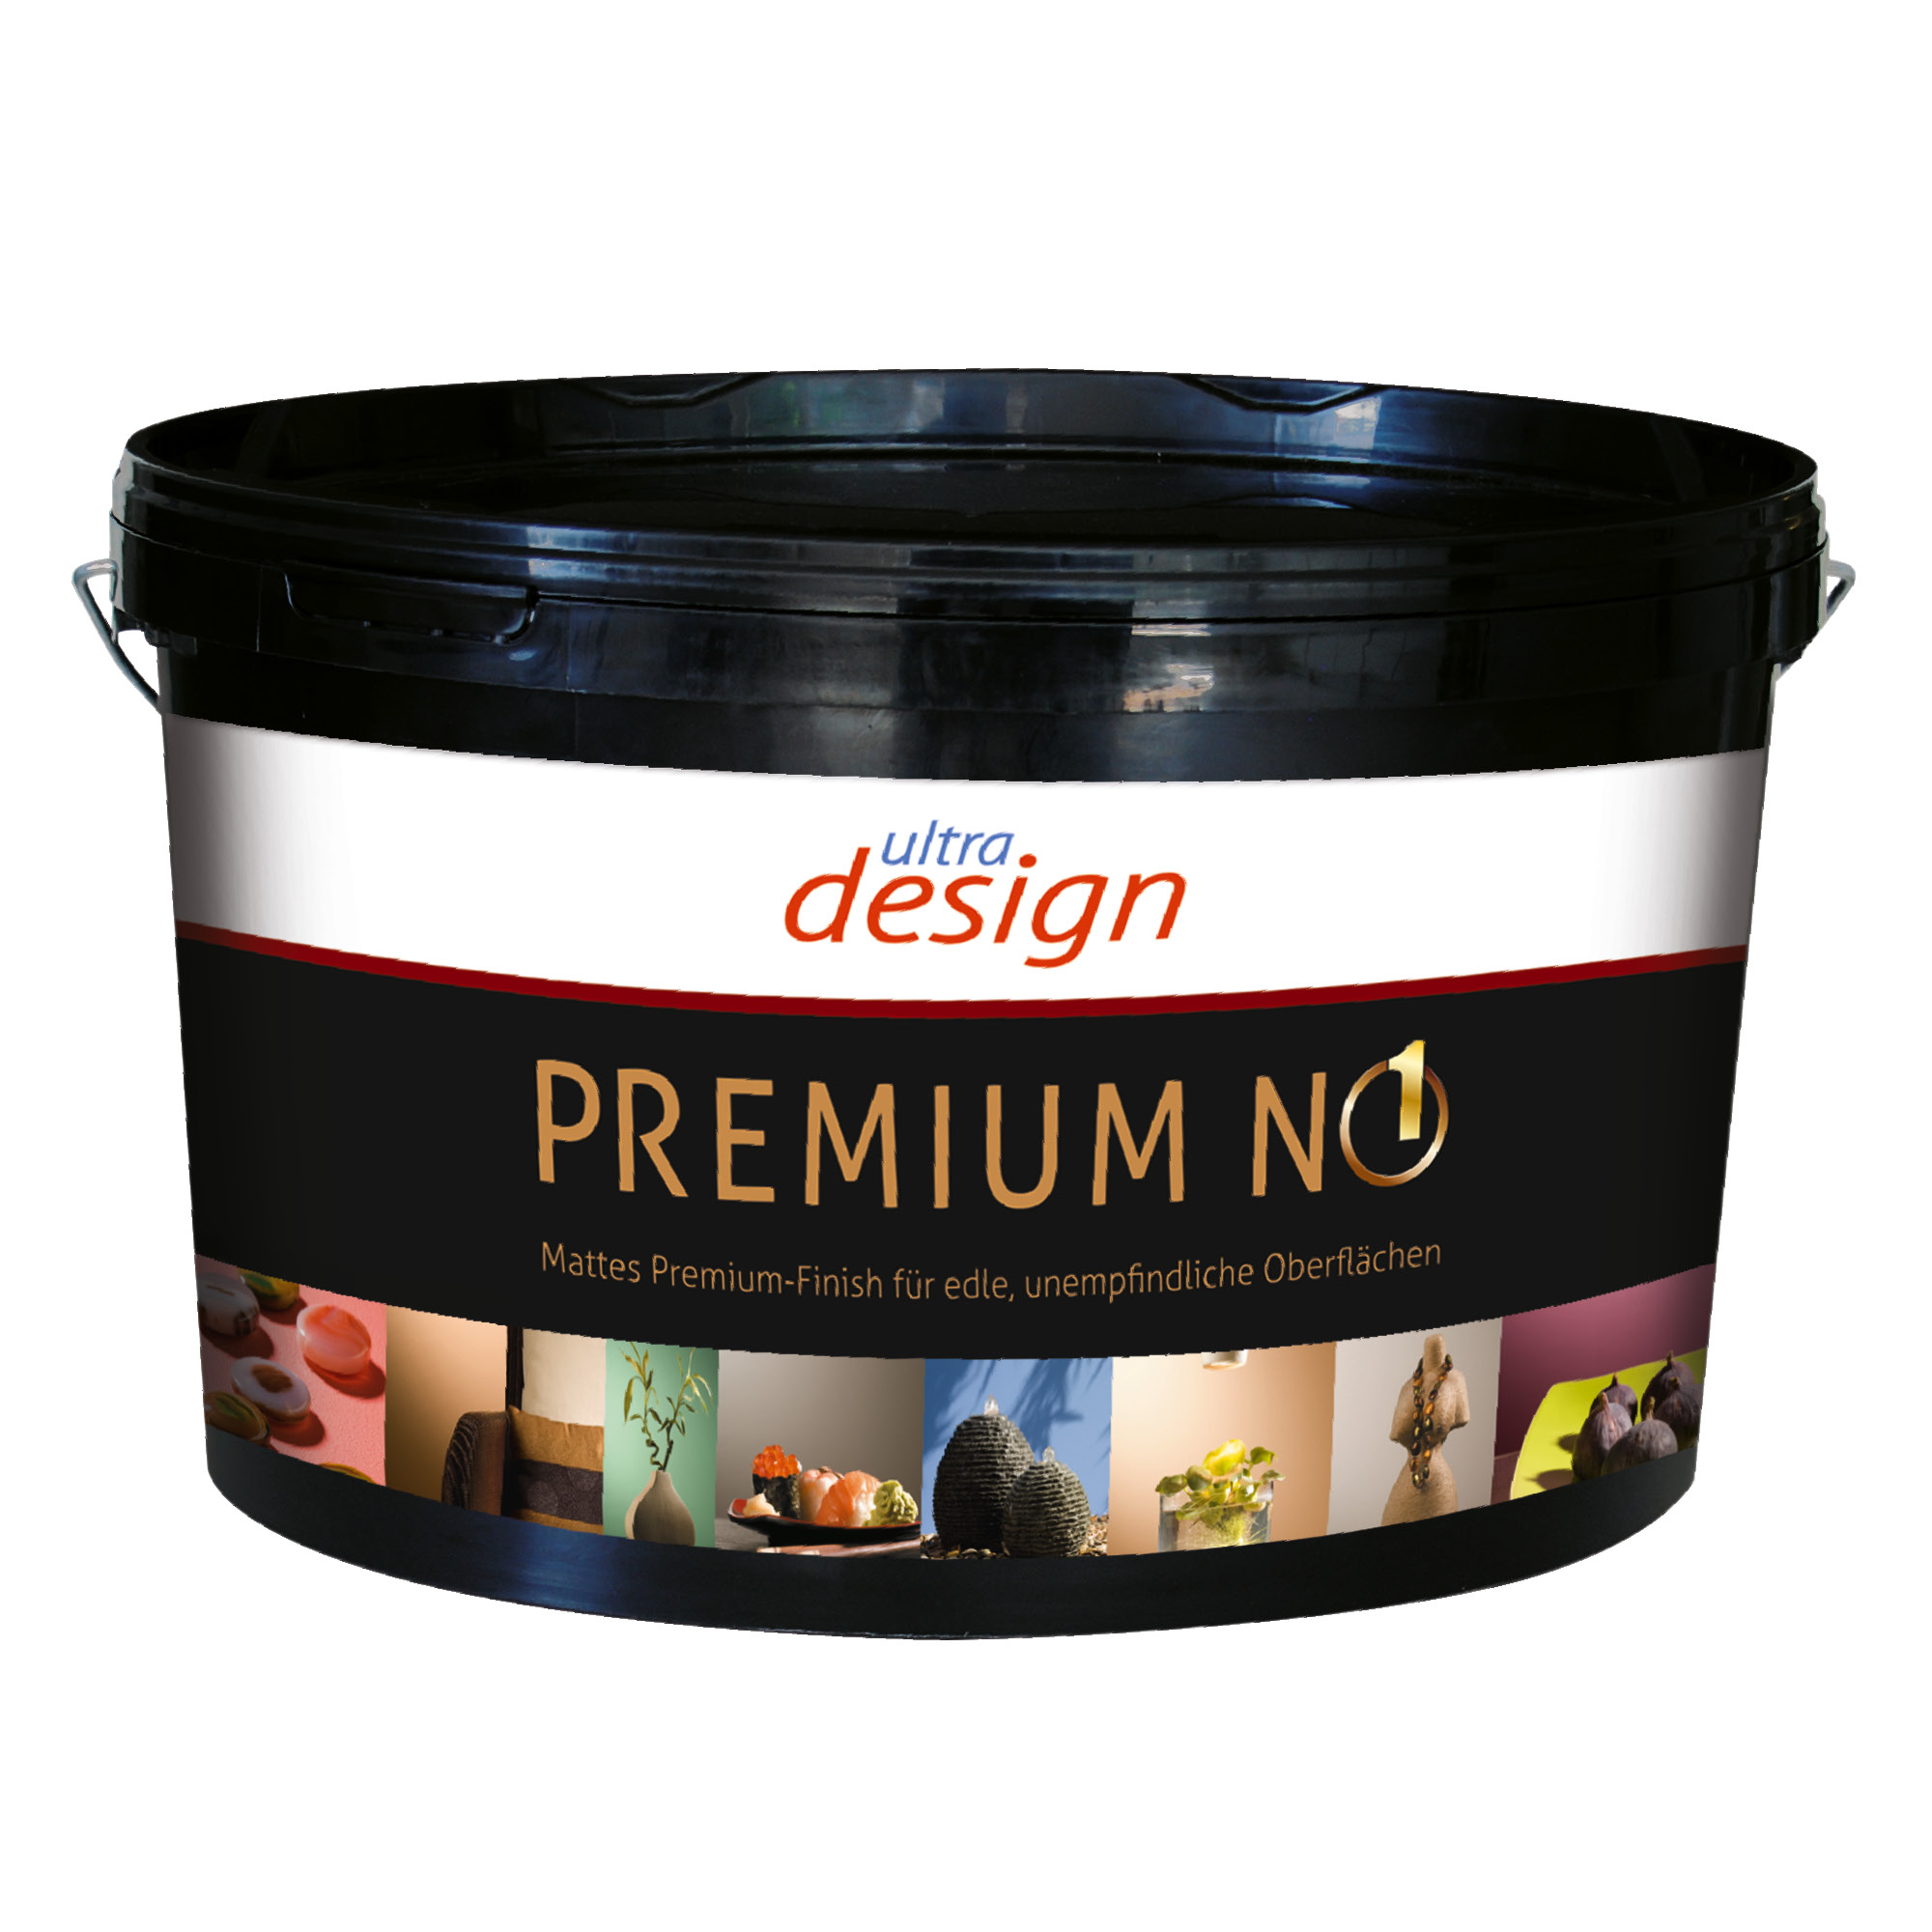 Imparat Ultra design Premium No 1 – 2,5l